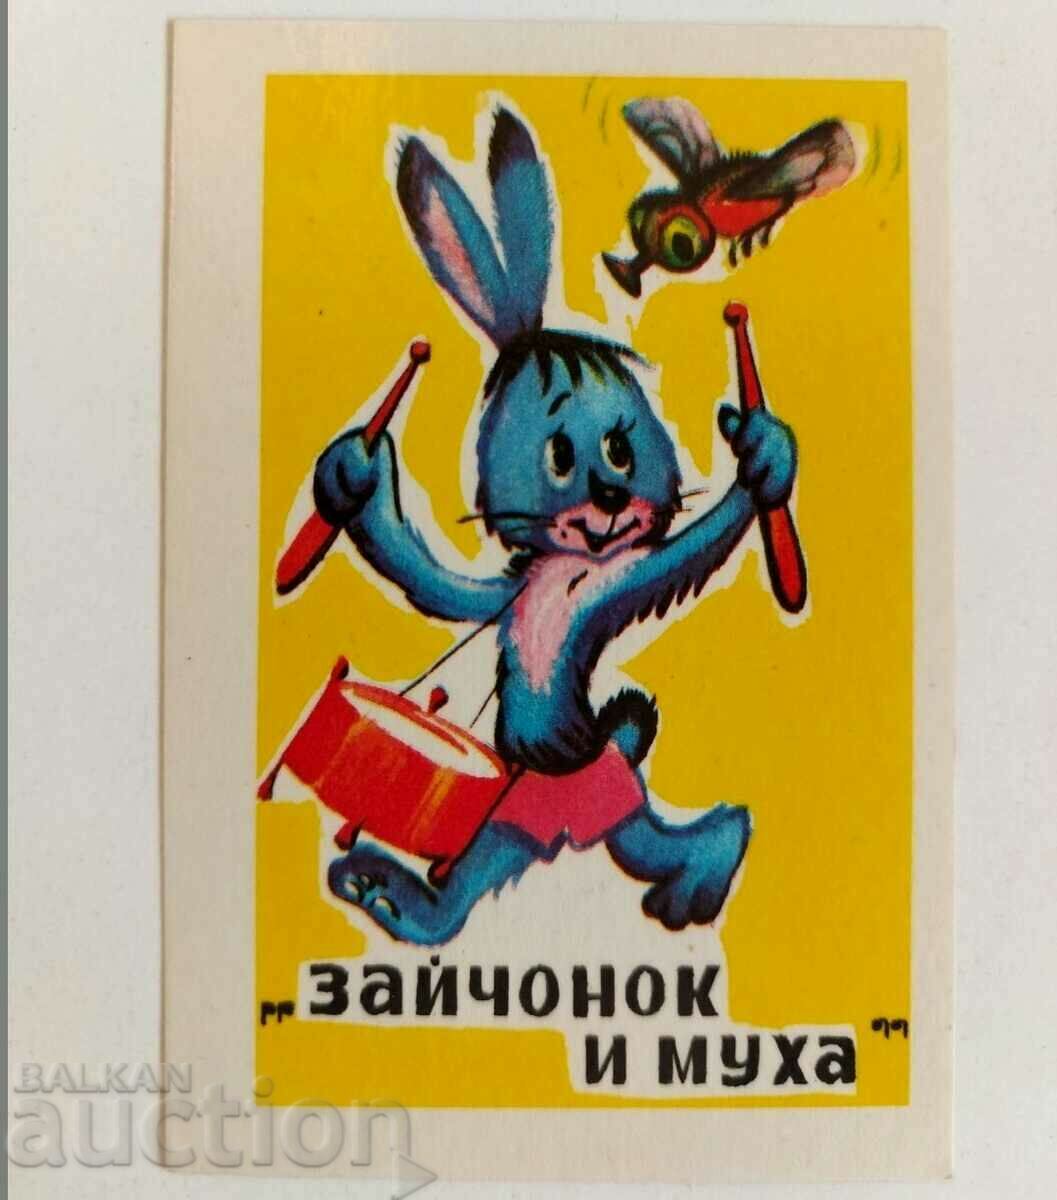 1986 SOCIAL CALENDAR Bunny AND FLY CALENDAR ΕΣΣΔ